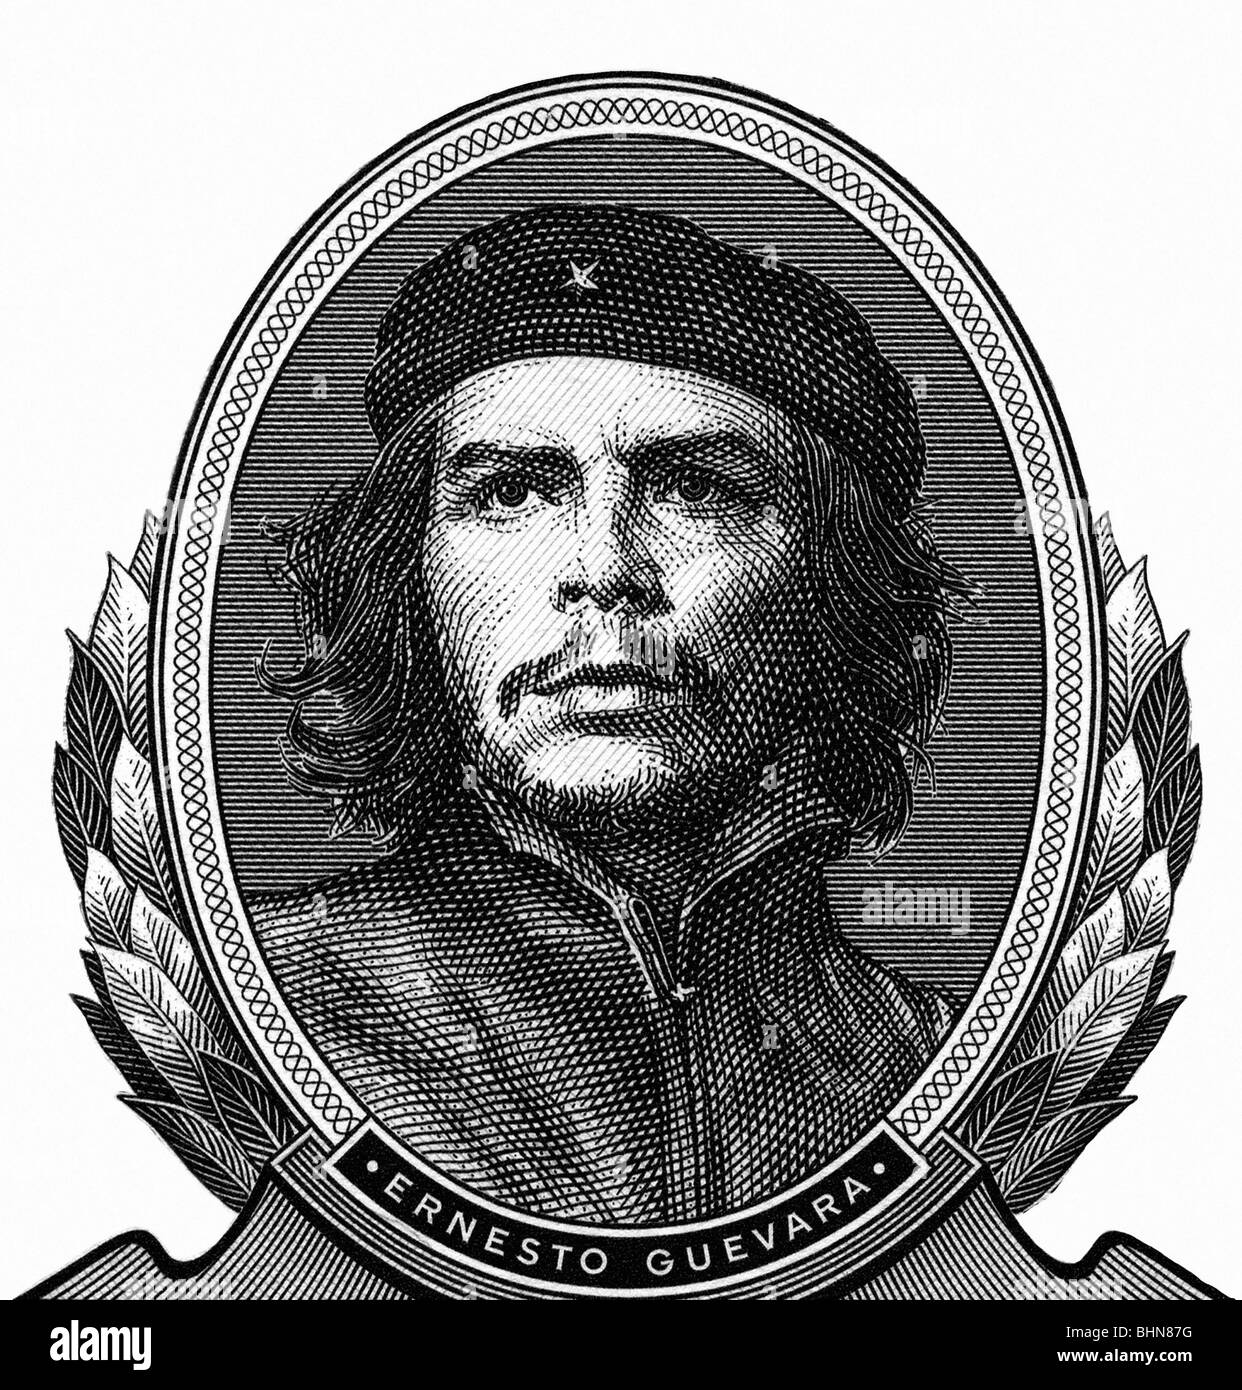 Guevara Serna, Ernesto "Che", 14.5.1928 - 9.10.1967, rivoluzionario argentin, ritratto, il dettaglio di una banconota cubana, 3 pesos, Foto Stock